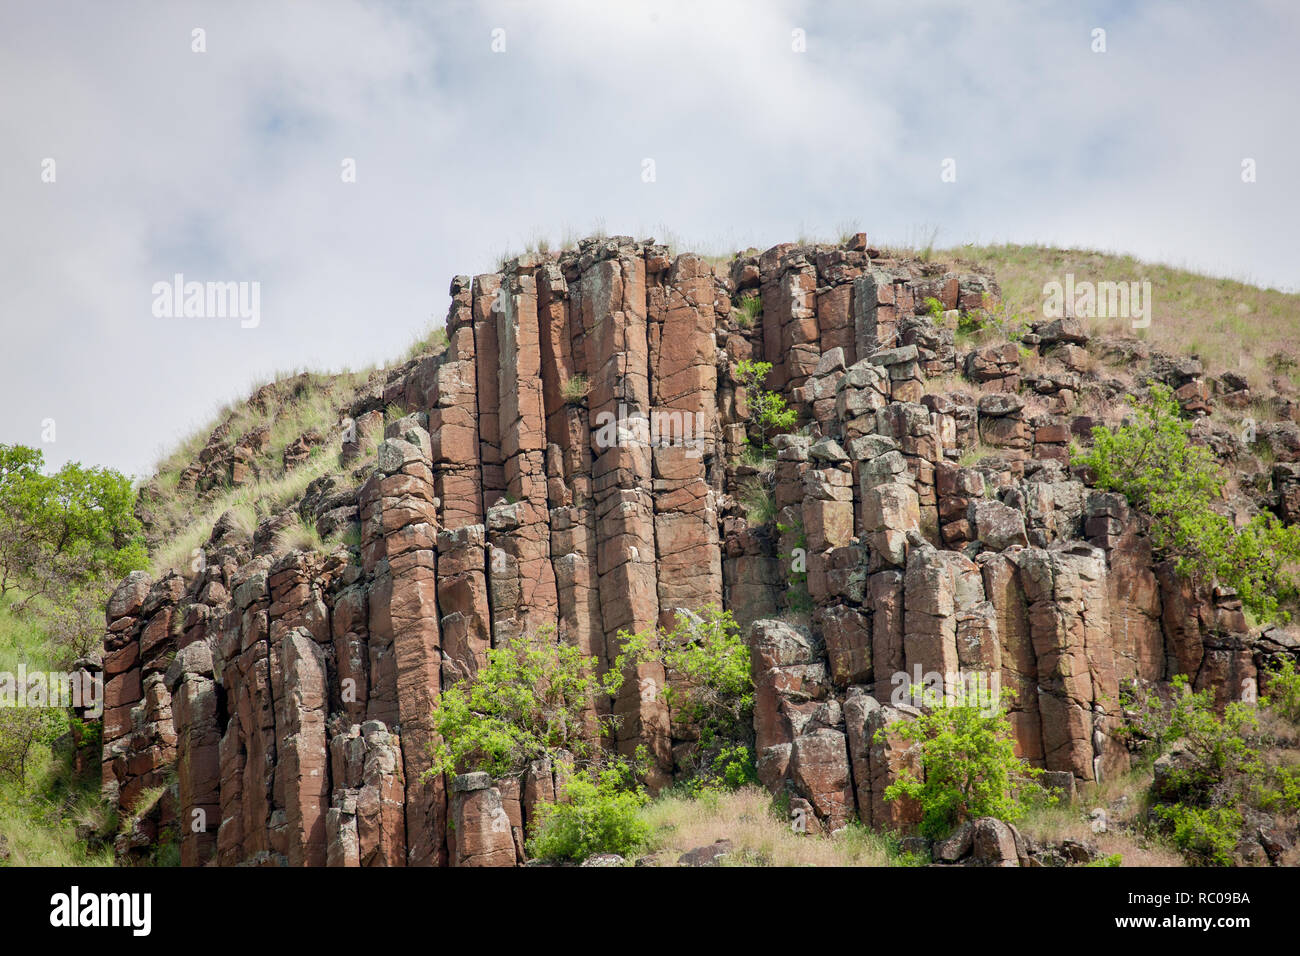 La rhyolite est une roche ignée. Les structures sont appelées colonnes de jointoiement. Vue à partir de la rivière Snake dans le Hells Canyon National Recreation Area Banque D'Images